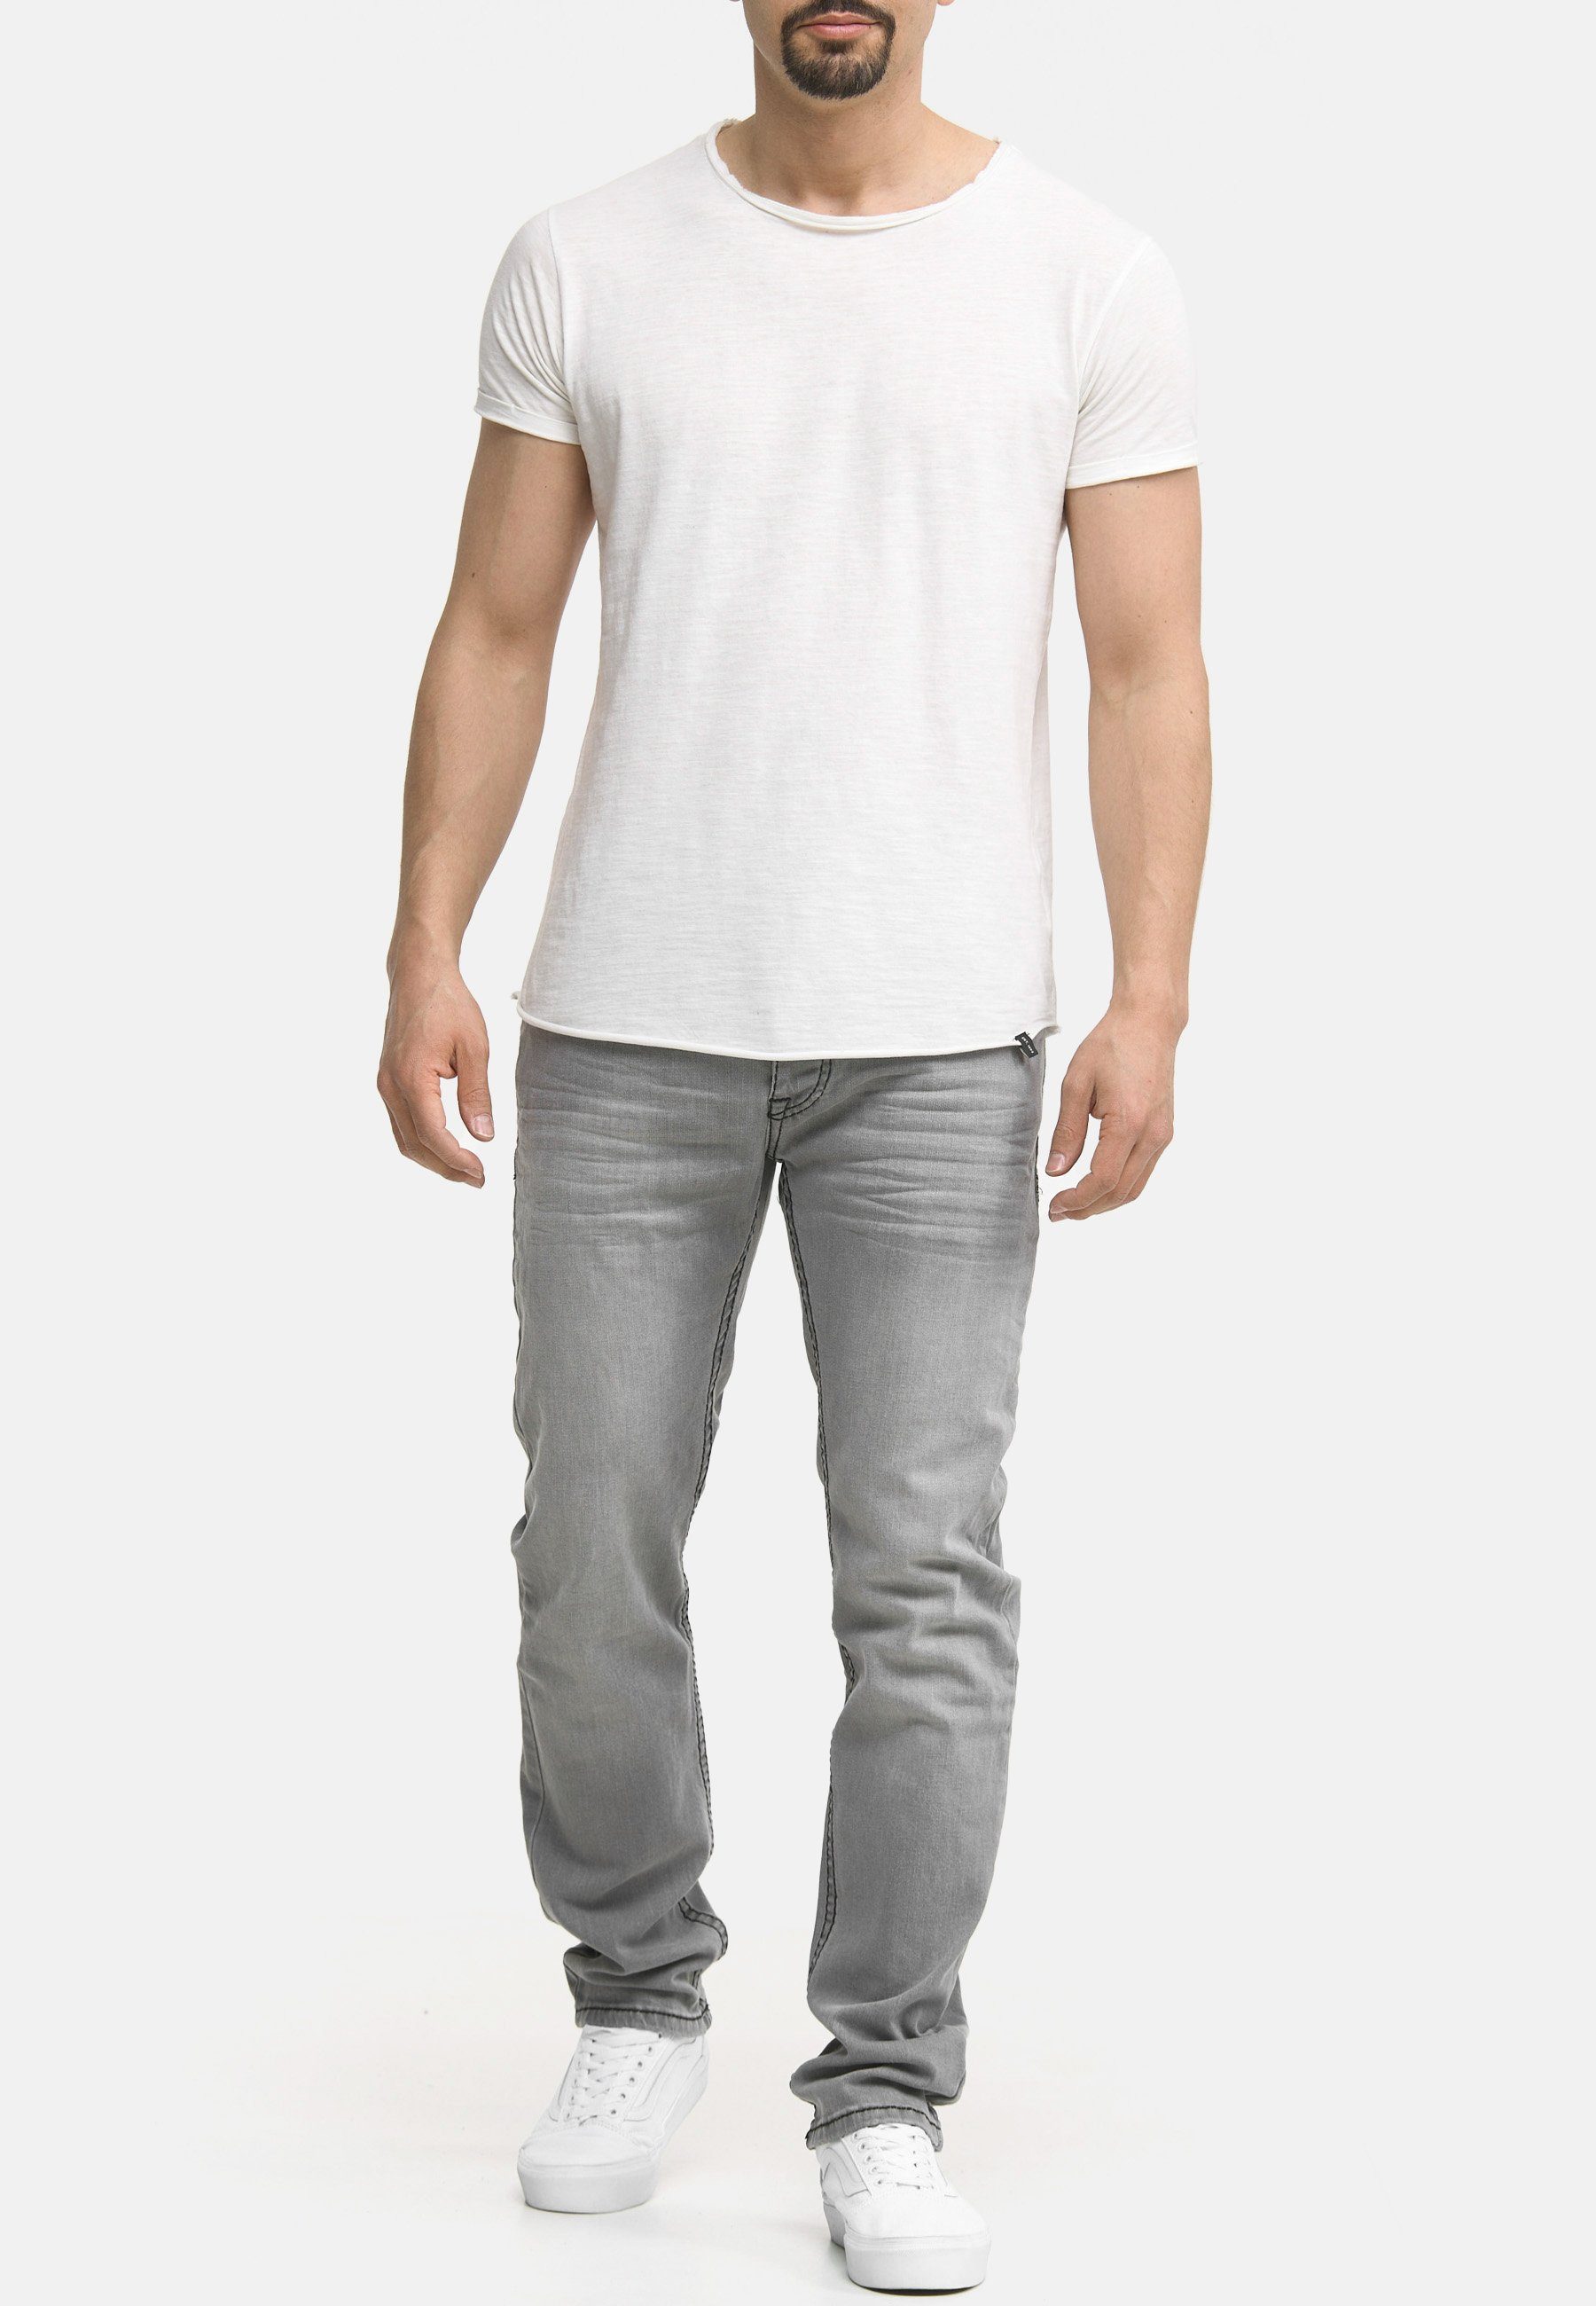 Code47 Jeans Regular-fit-Jeans Pocket grey Denim Männer Regular Hose Herren Five Bootcut Code47 903 Fit